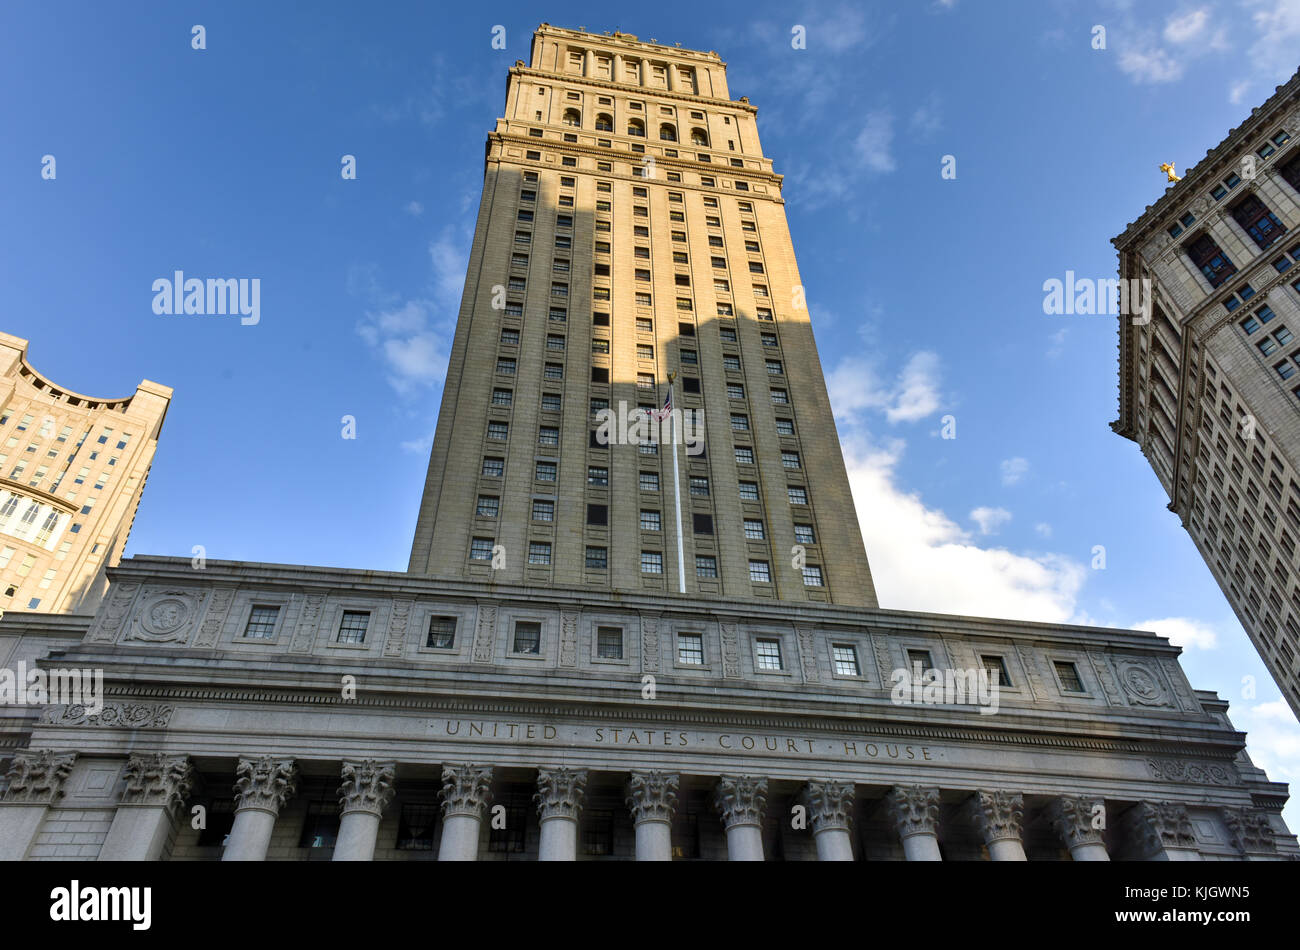 United States Court House für den südlichen Bezirk von New York in Manhattan, New York, NY, USA Stockfoto